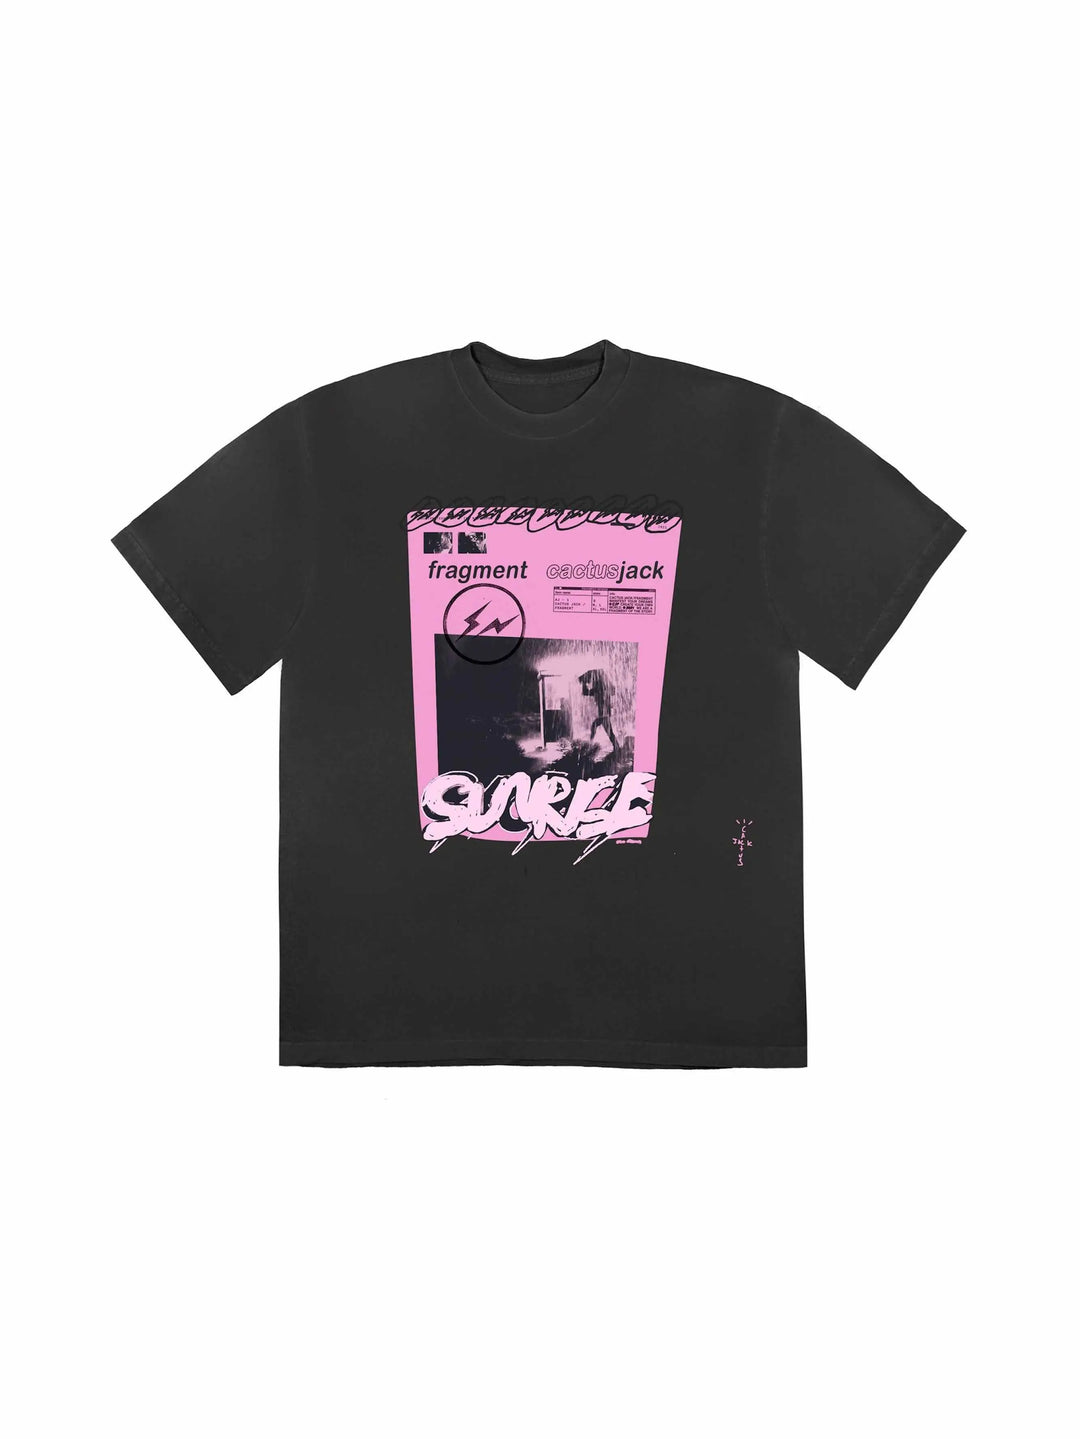 Travis Scott Cactus Jack For Fragment Pink Sunrise T-shirt Washed Black - Prior